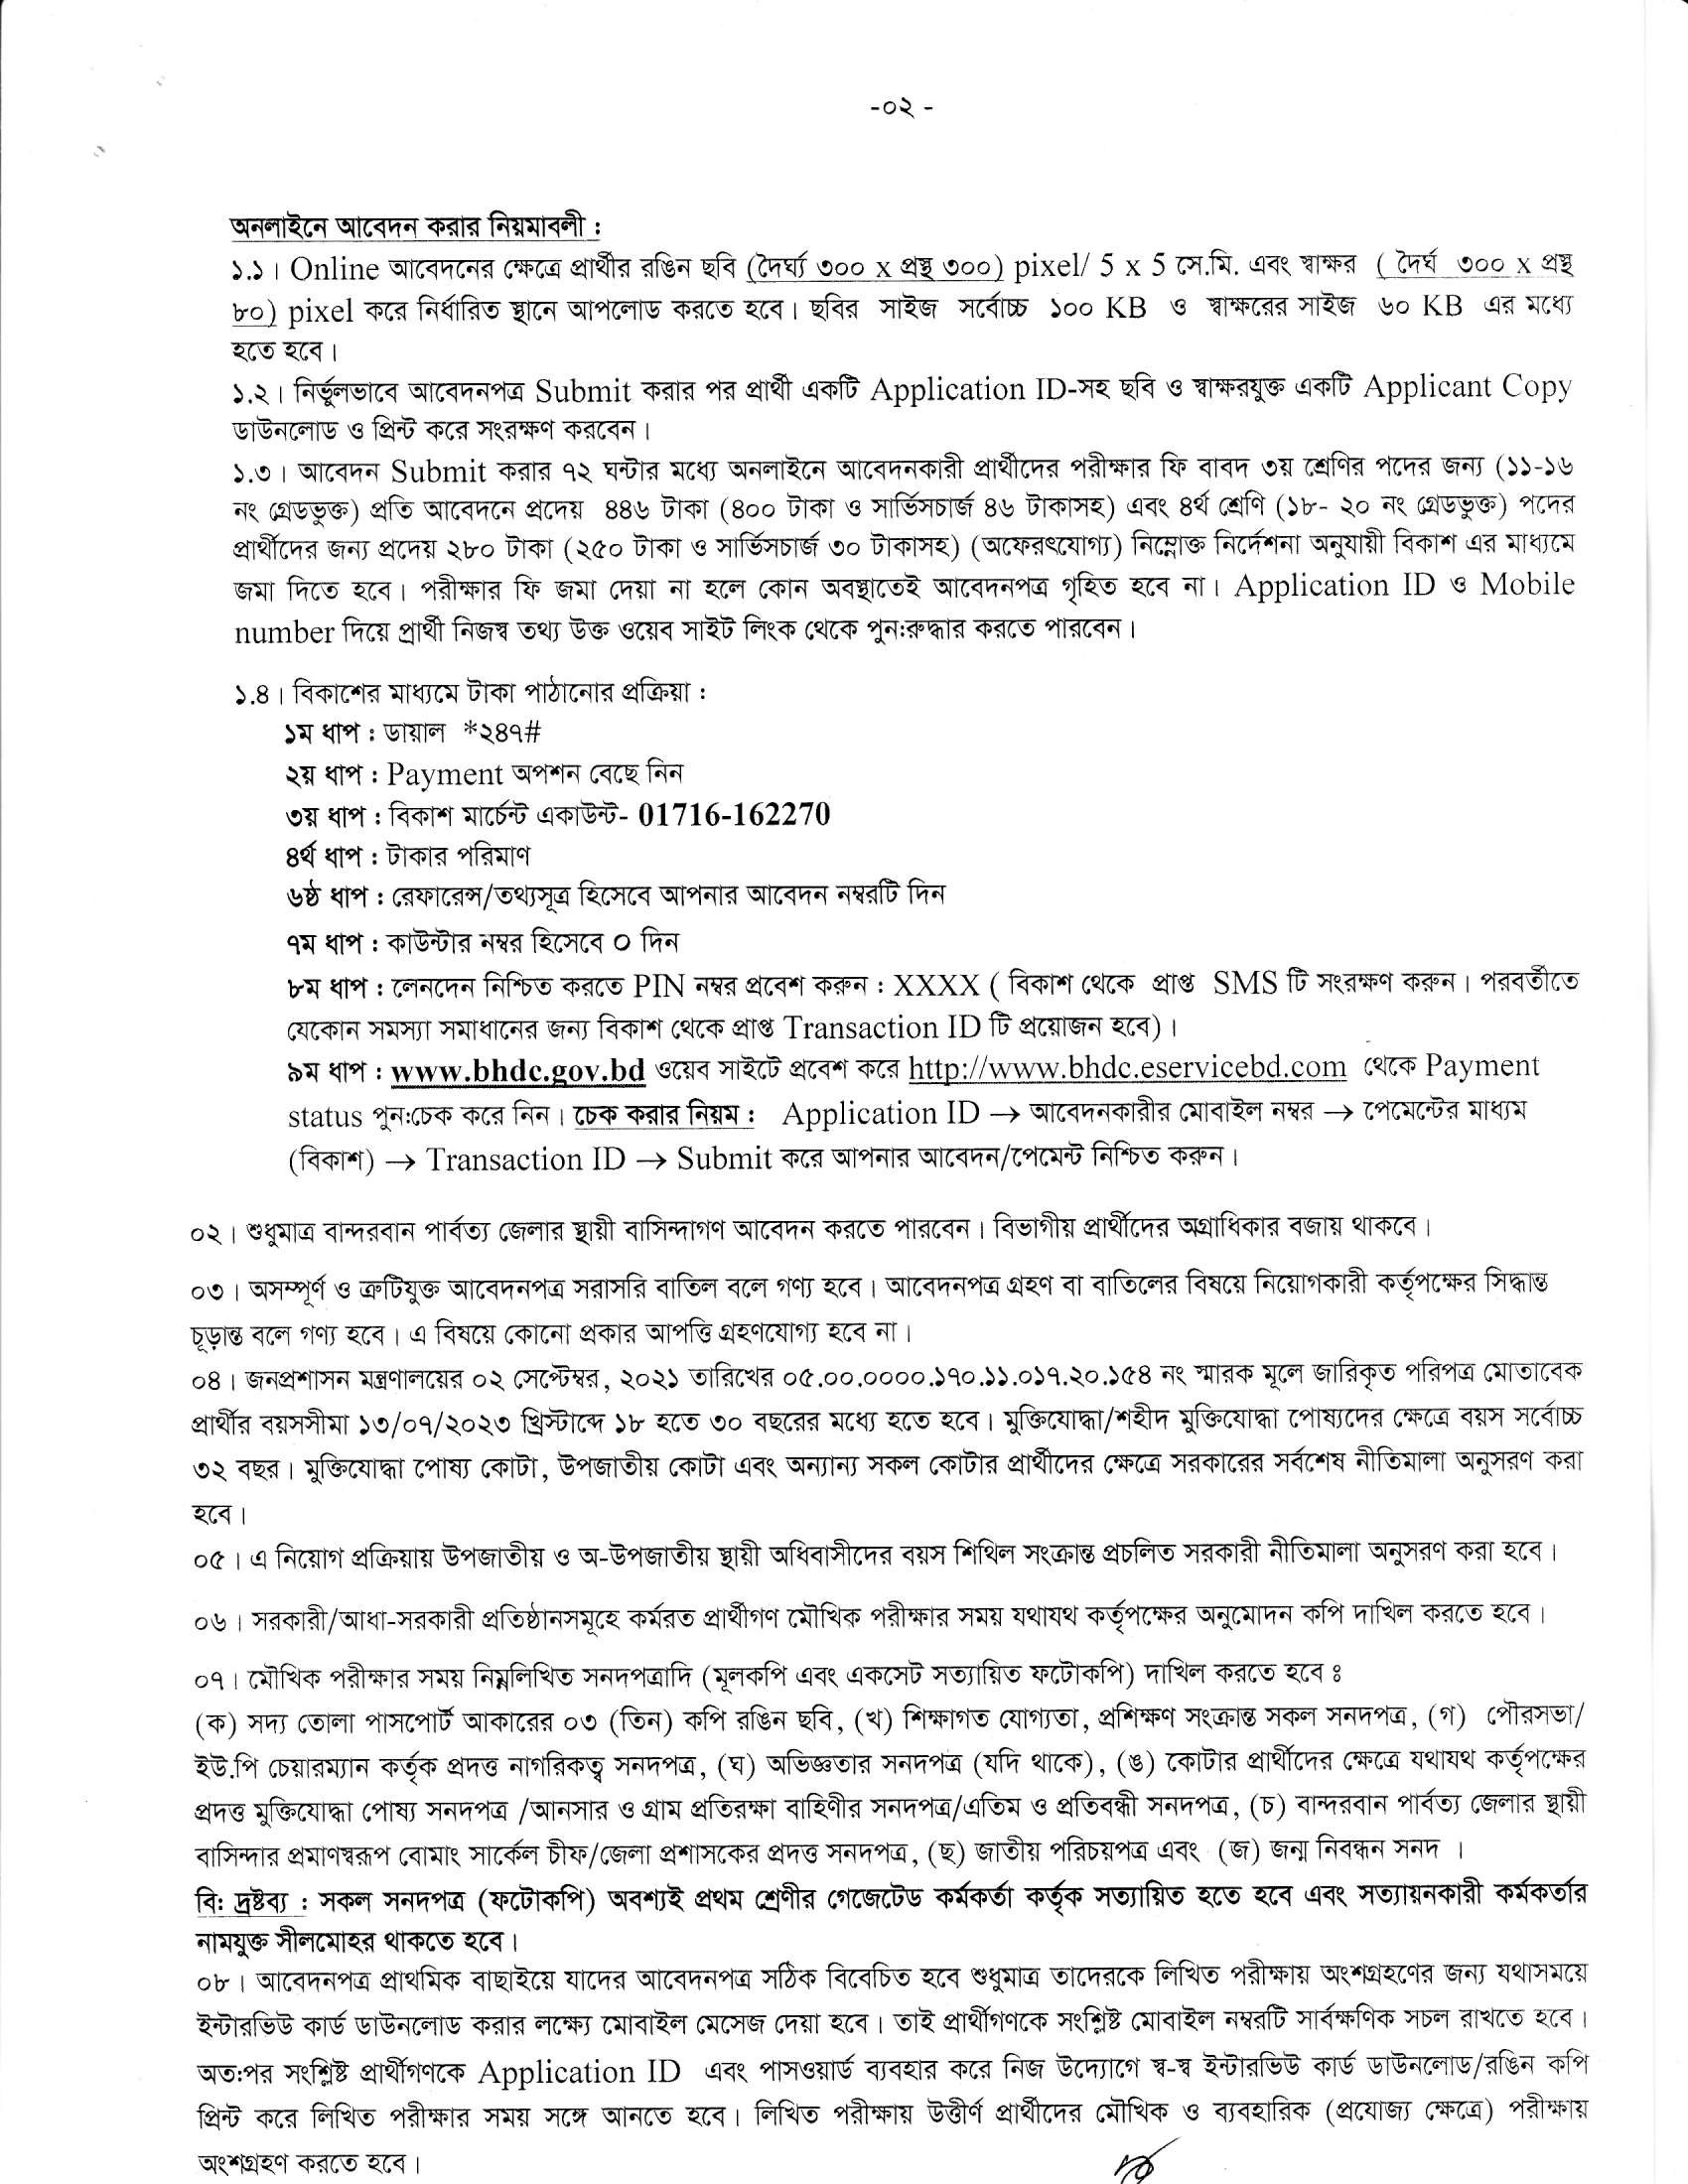 বান্দরবান পার্বত্য জেলা পরিষদ নিয়োগ বিজ্ঞপ্তি ২০২৩ - BHDC jobs 2023